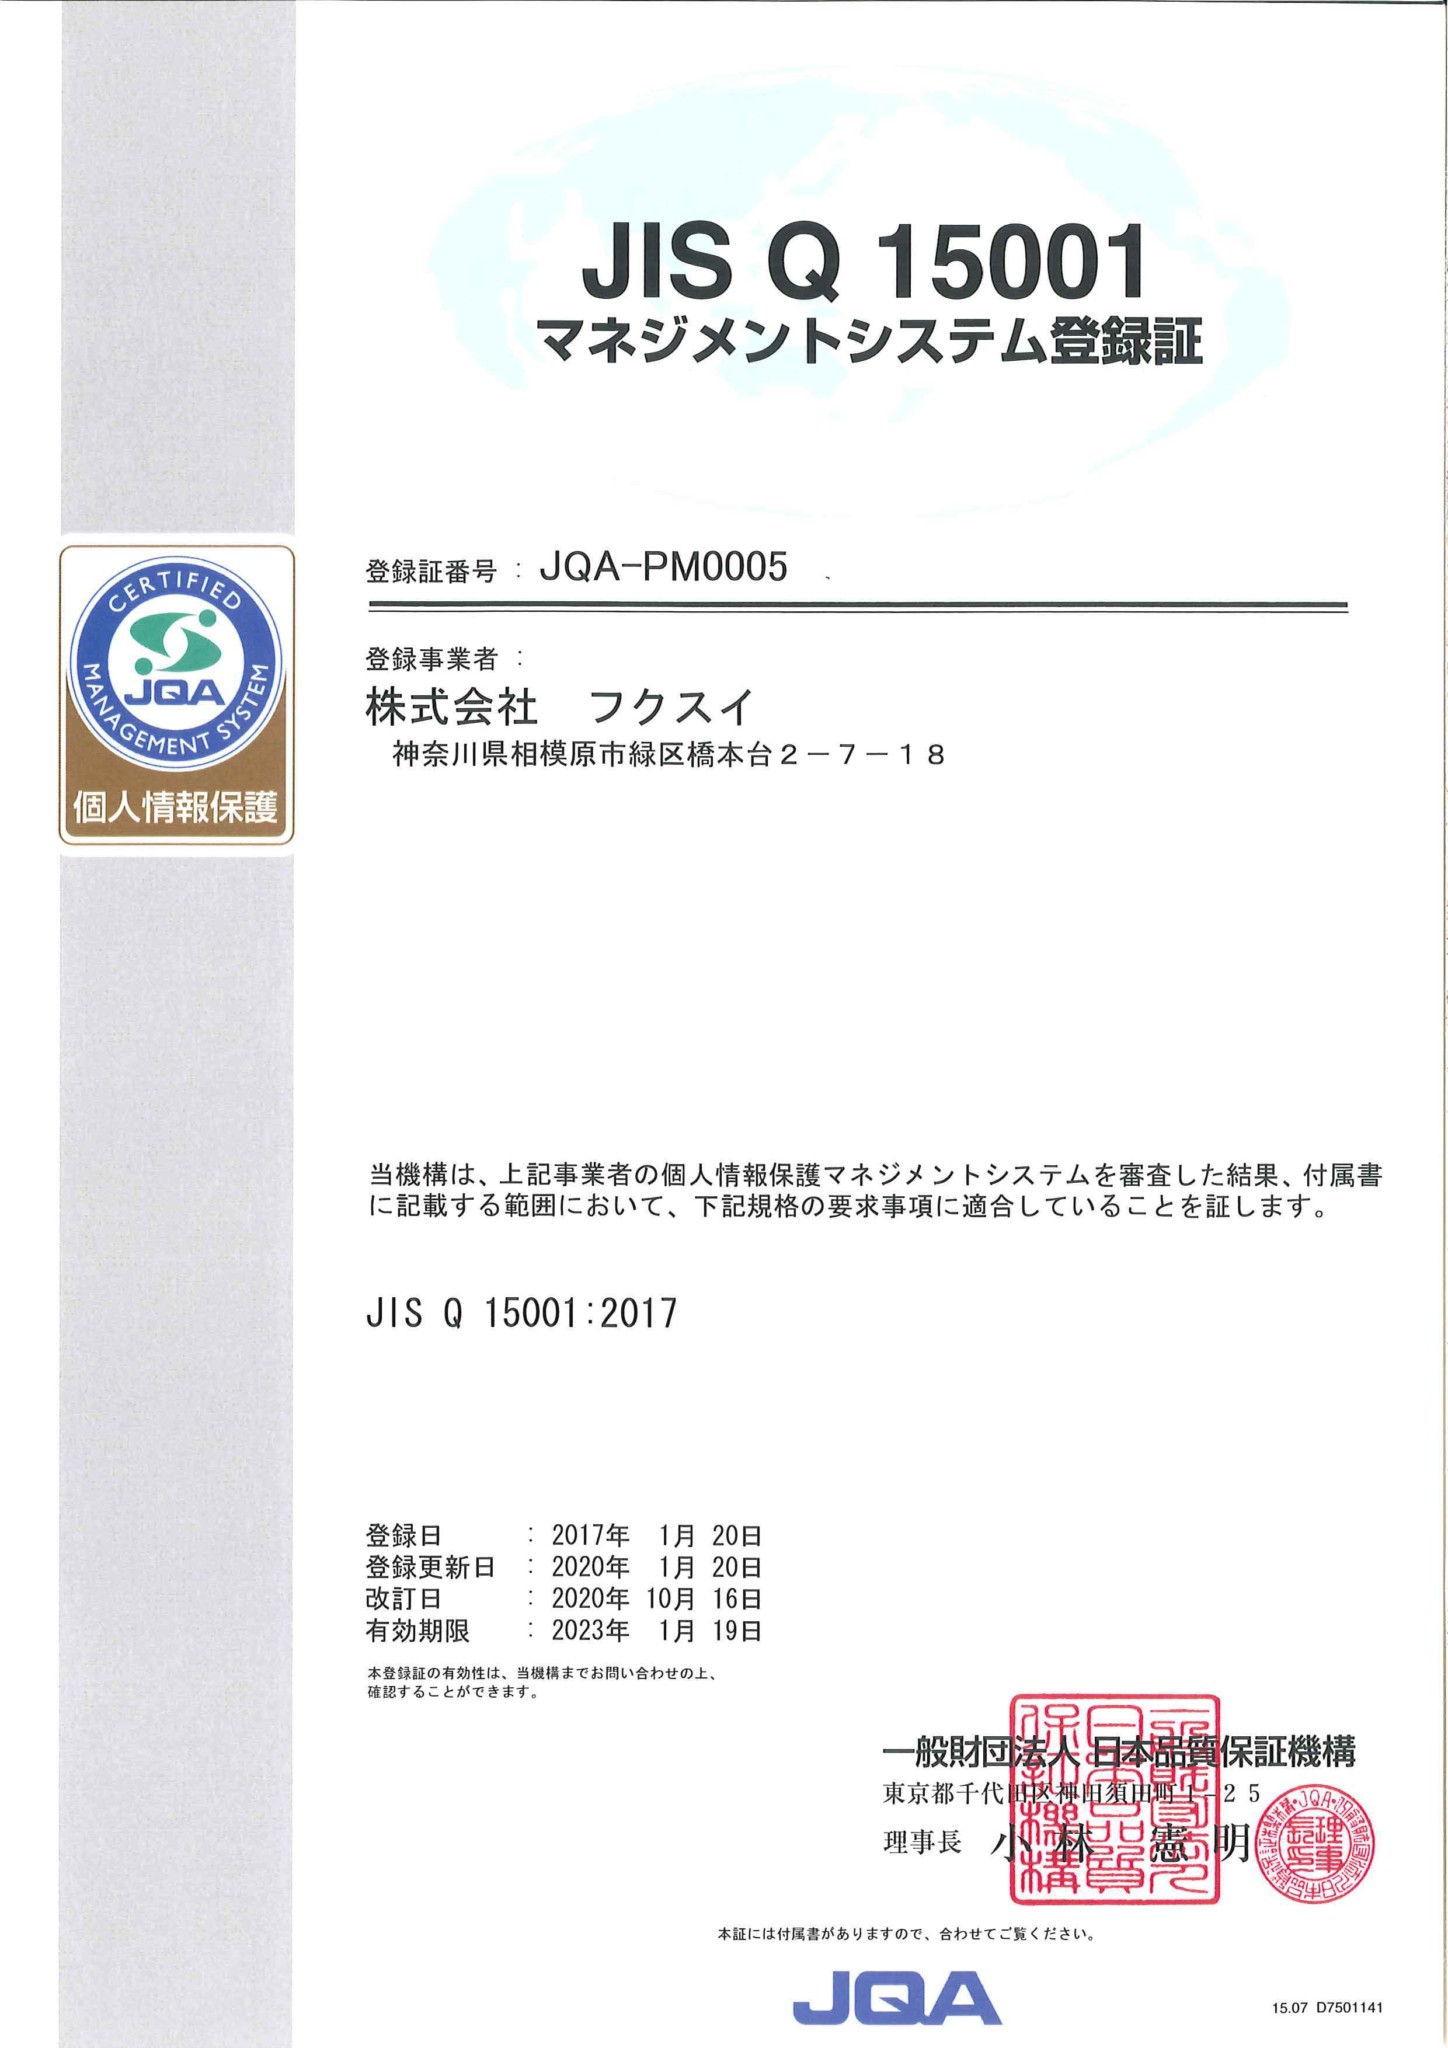 JISQ15001-JQA-PM0005